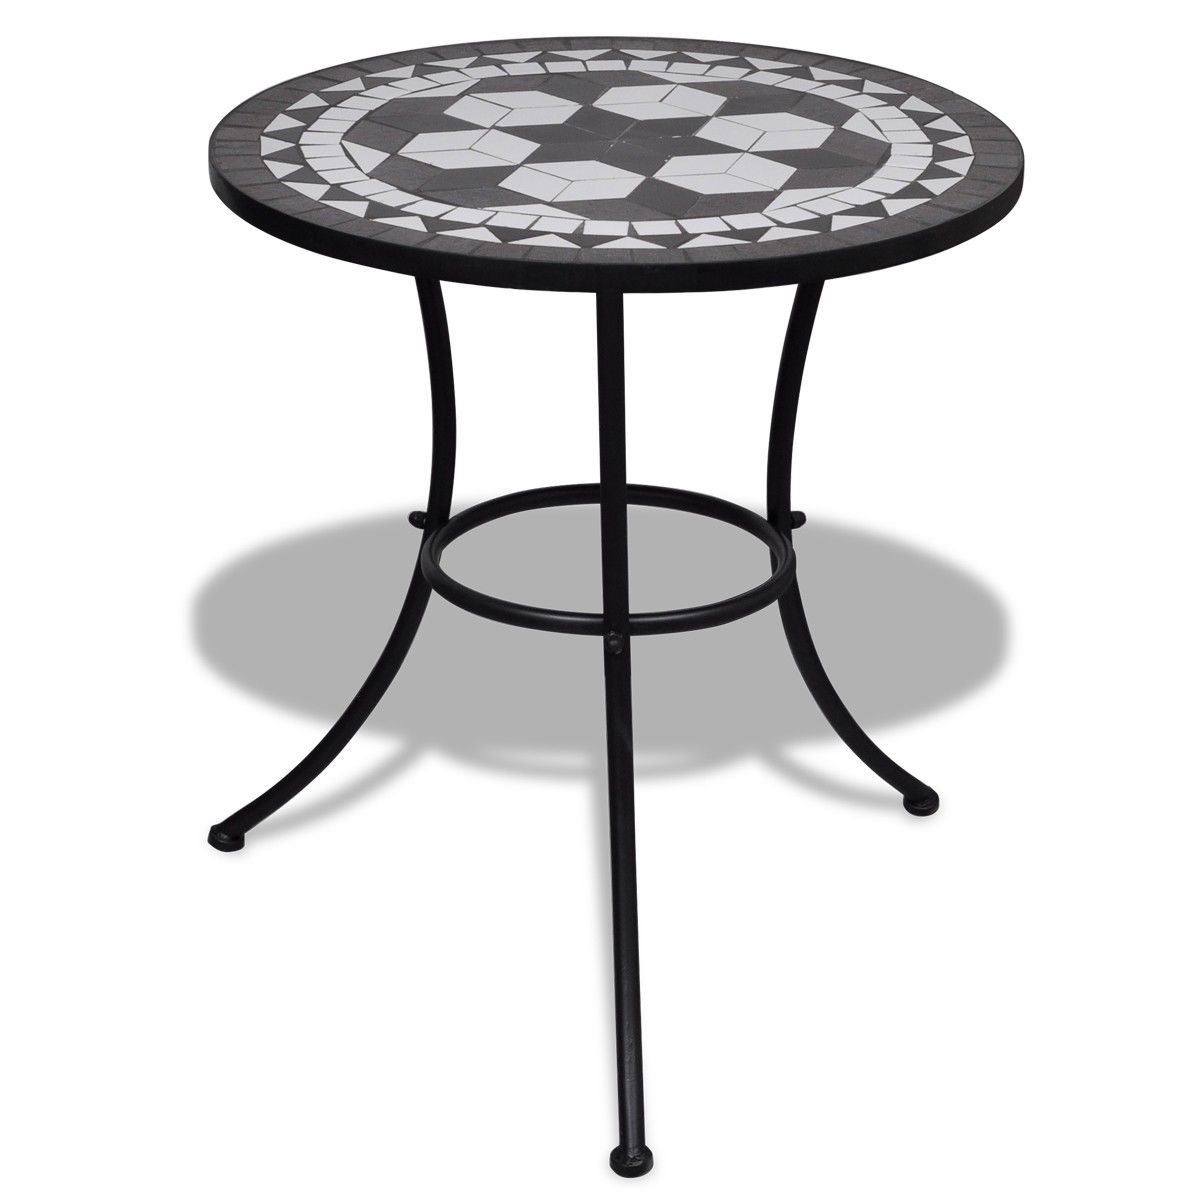 Mozaikový stůl 60 cm, bistro stolek, černo-bílý